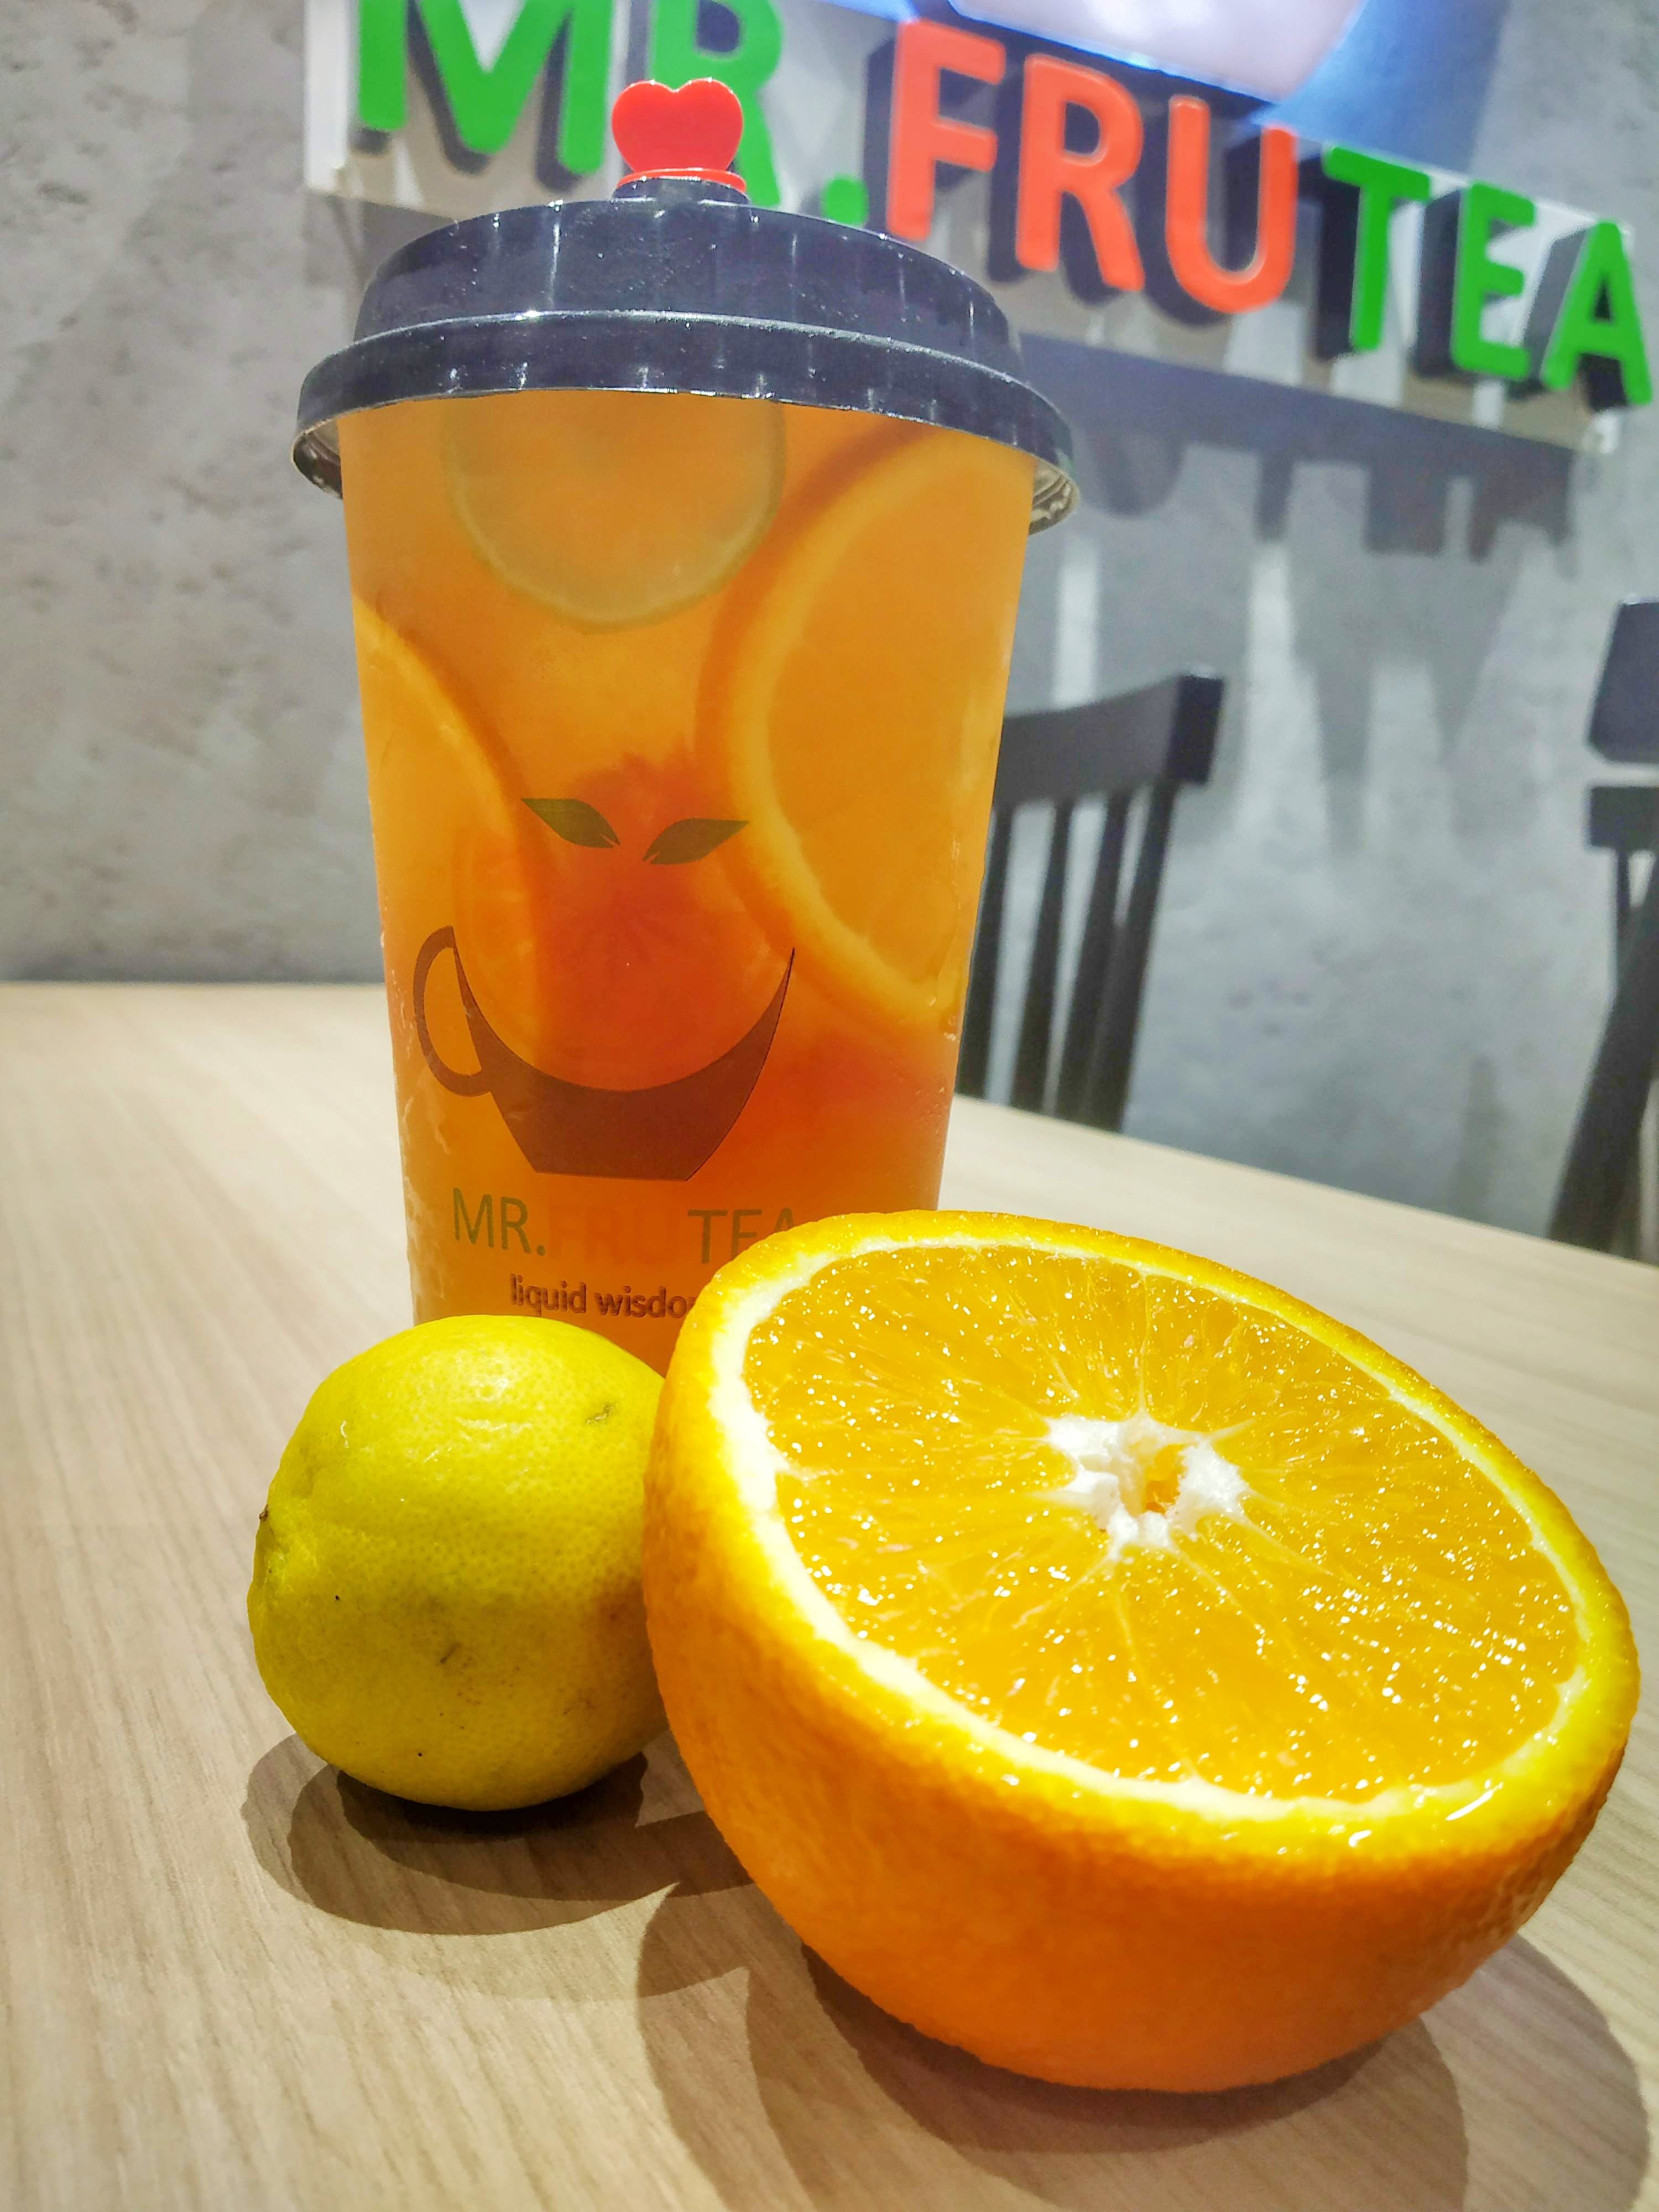 Citrus,Fruit,Juice,Orange drink,Food,Orange juice,Lemon-lime,Meyer lemon,Drink,Orange soft drink